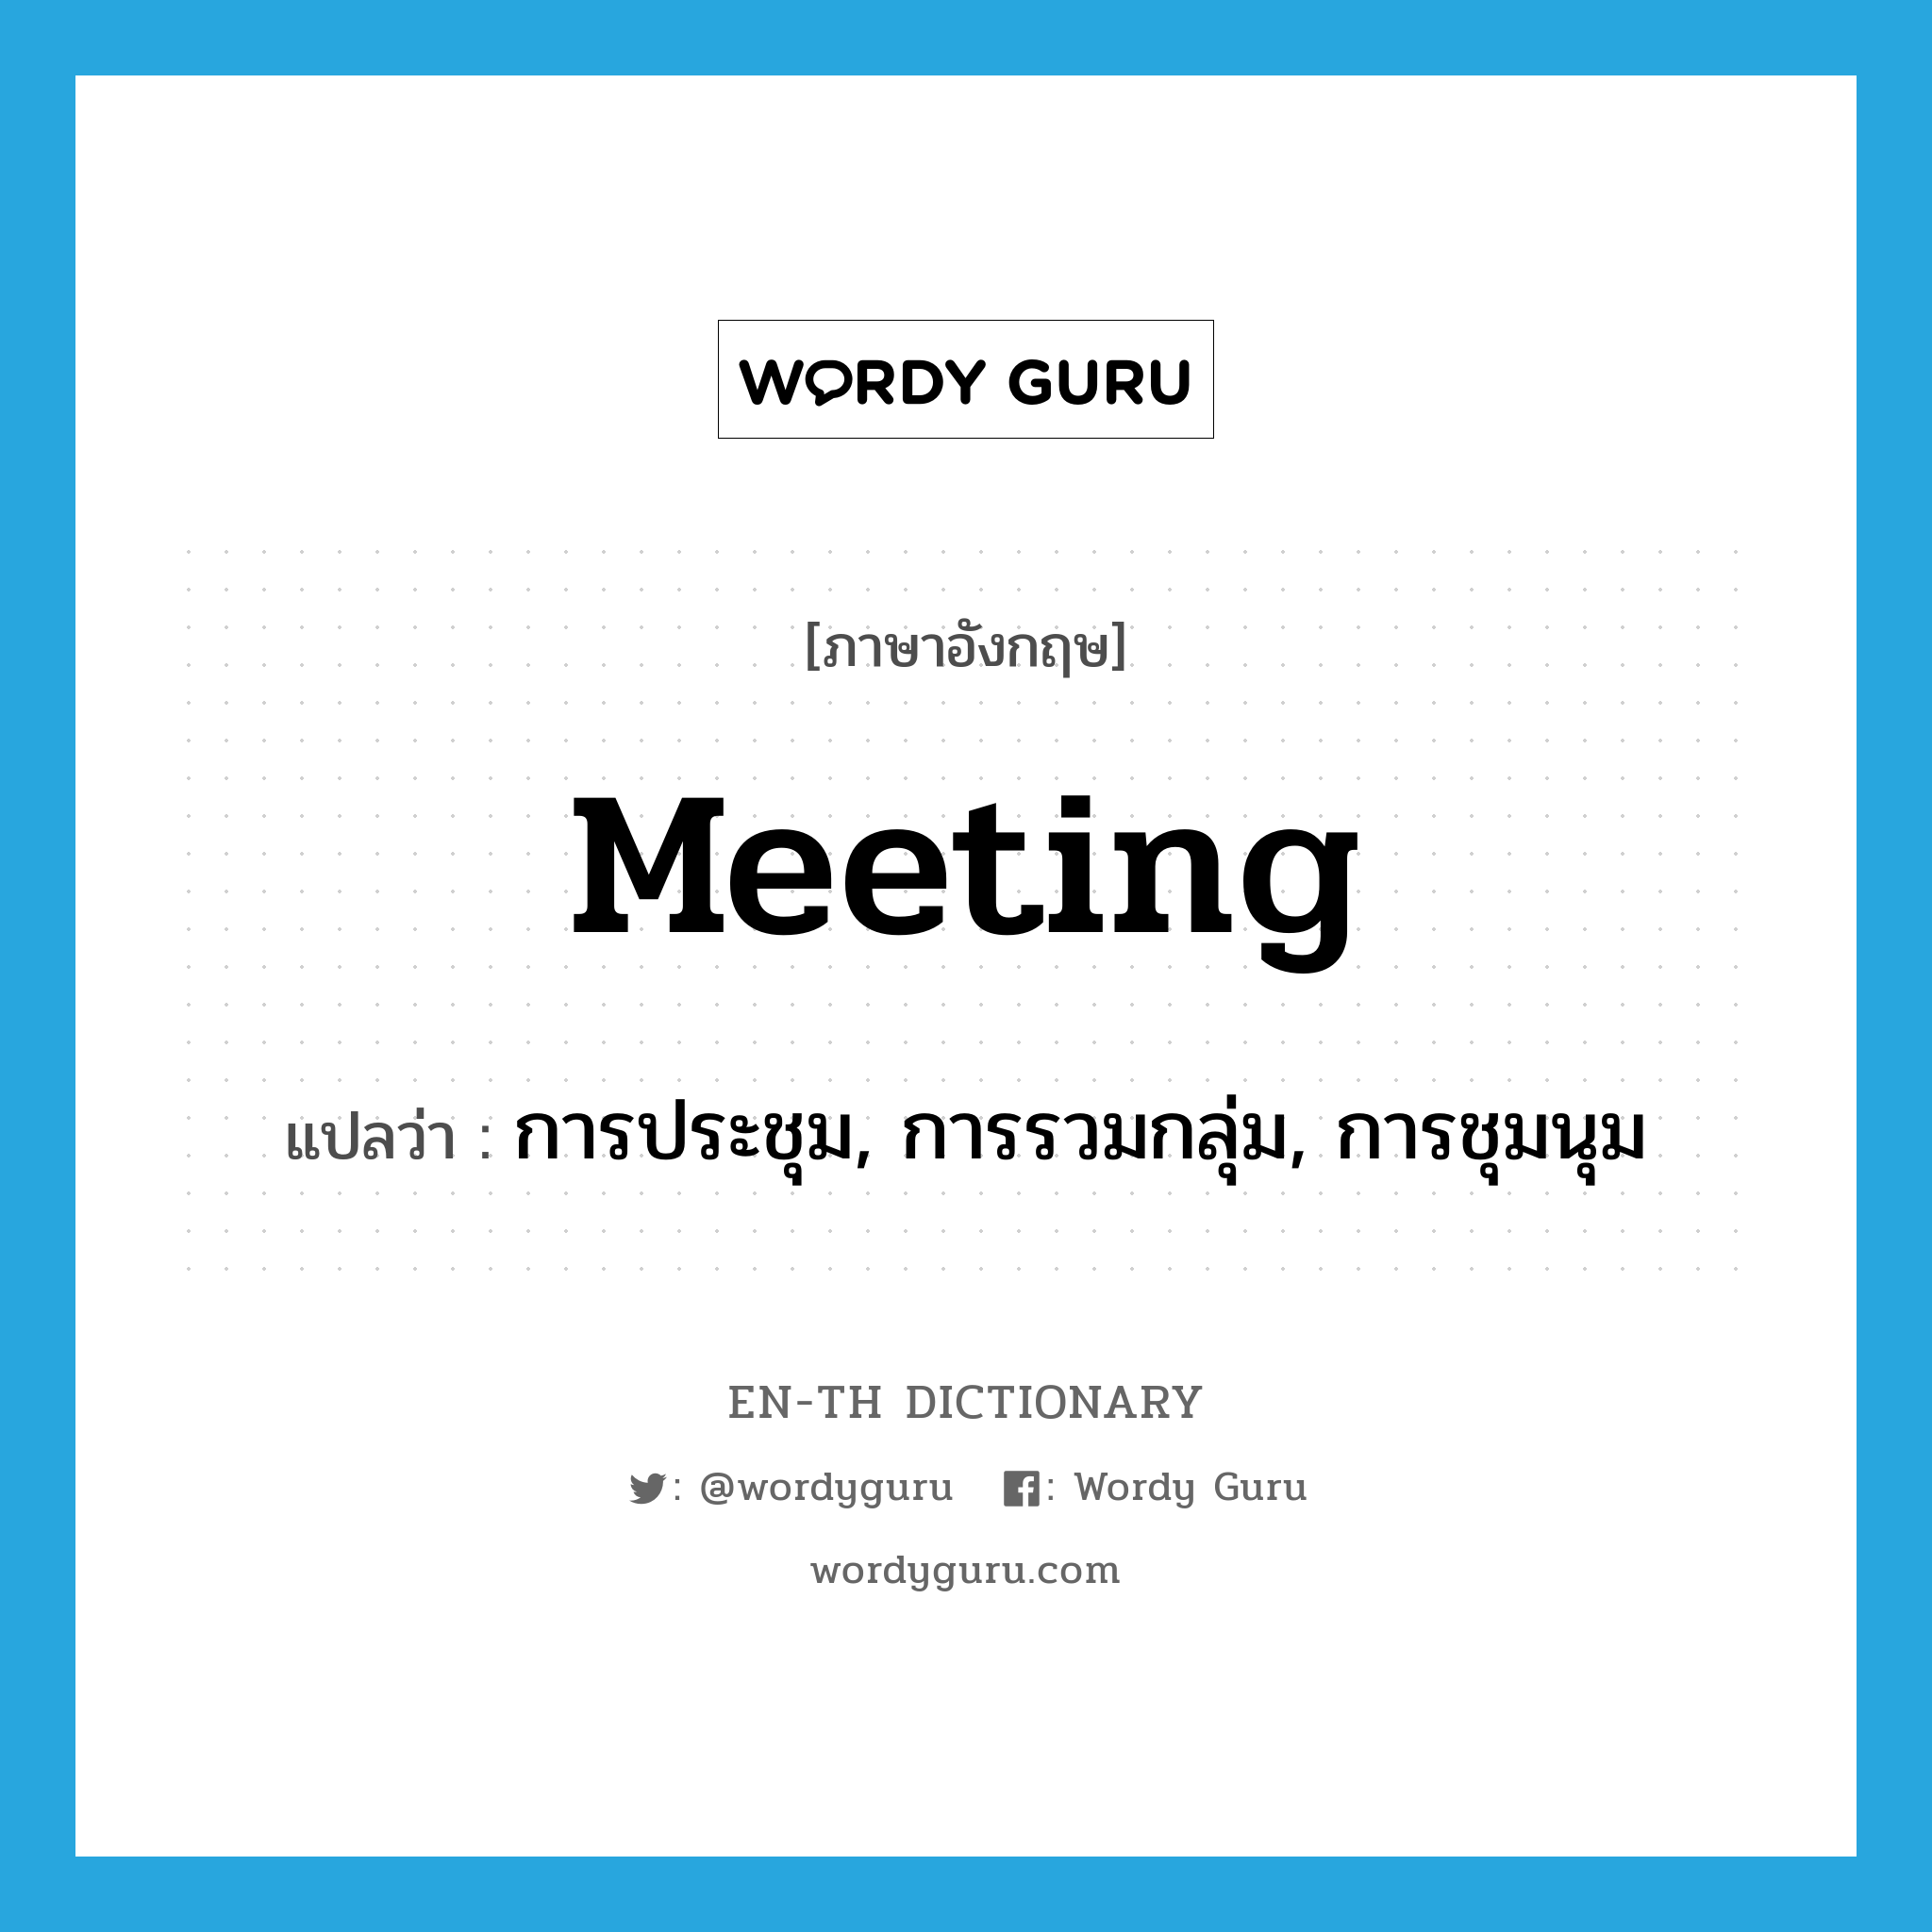 การประชุม, การรวมกลุ่ม, การชุมนุม ภาษาอังกฤษ?, คำศัพท์ภาษาอังกฤษ การประชุม, การรวมกลุ่ม, การชุมนุม แปลว่า meeting ประเภท N หมวด N